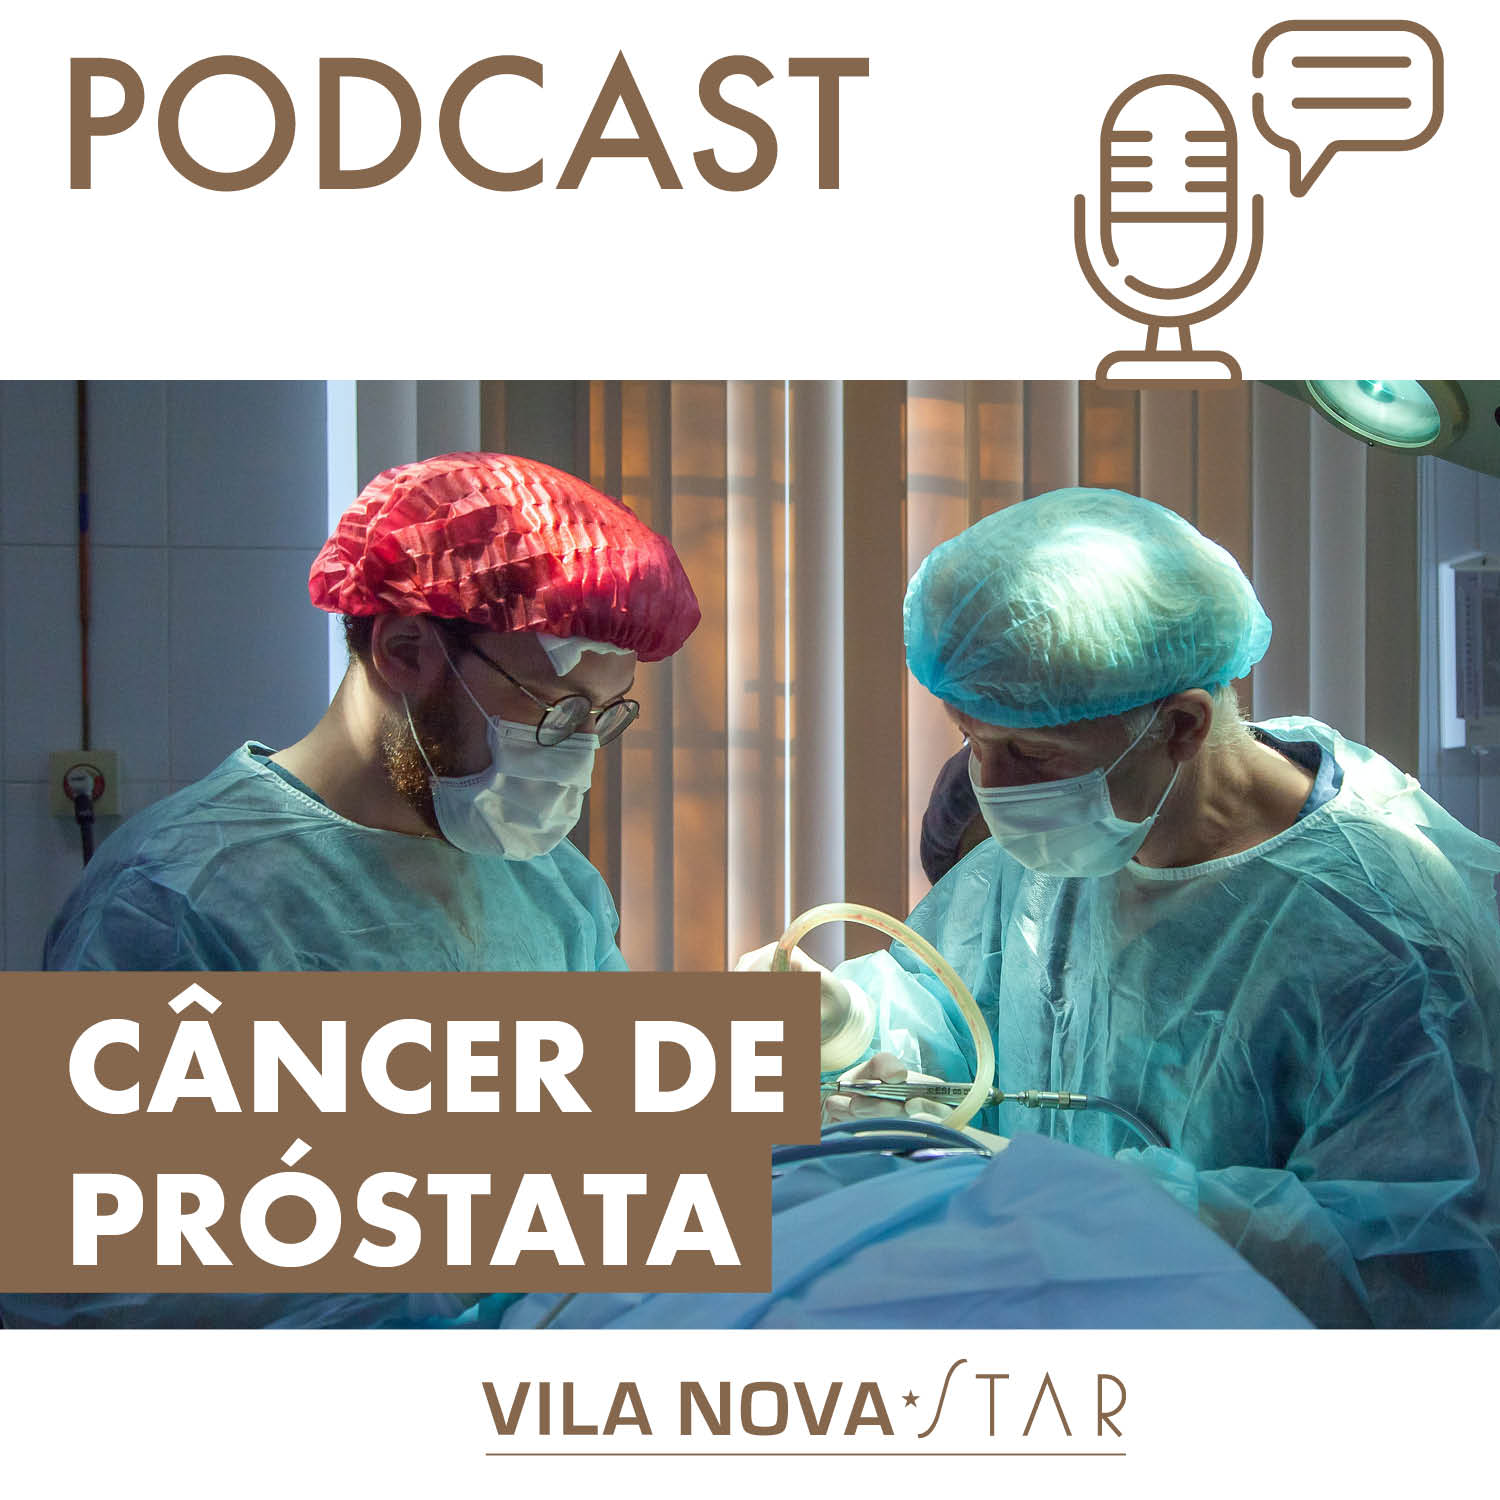 Conteúdo Patrocinado: Cuidados e avanços sobre o câncer de próstata